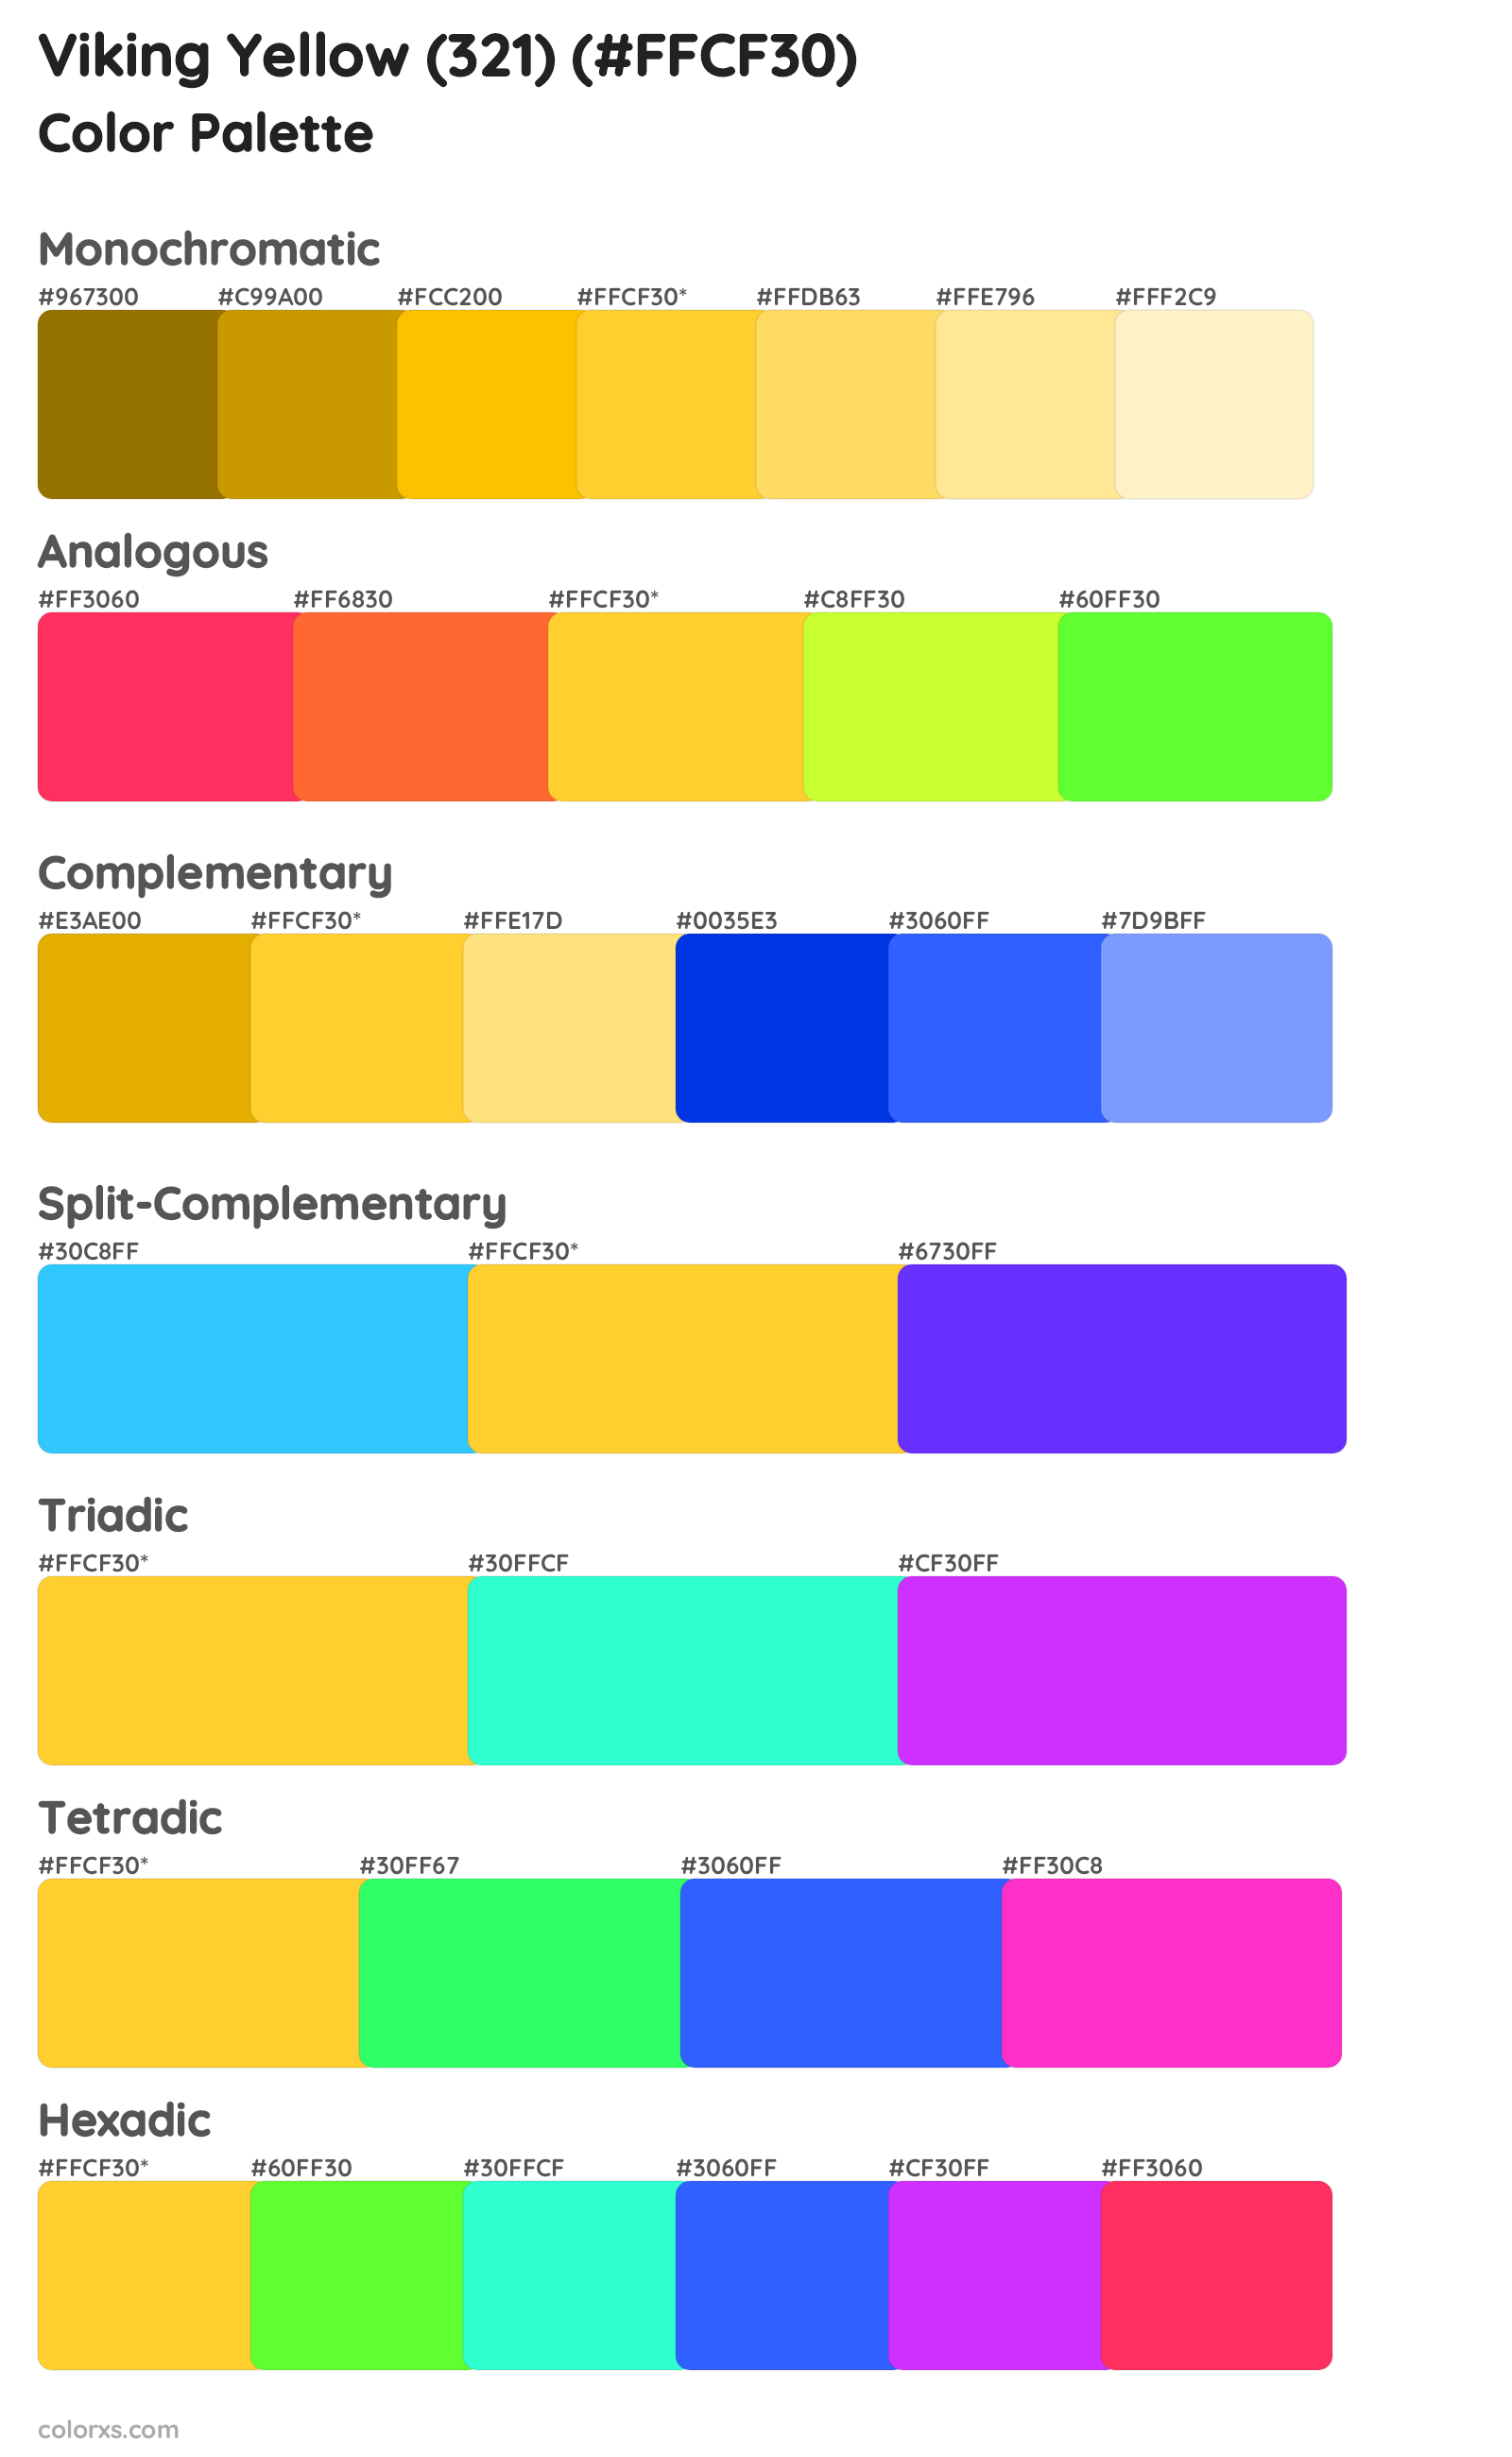 Viking Yellow (321) Color Scheme Palettes